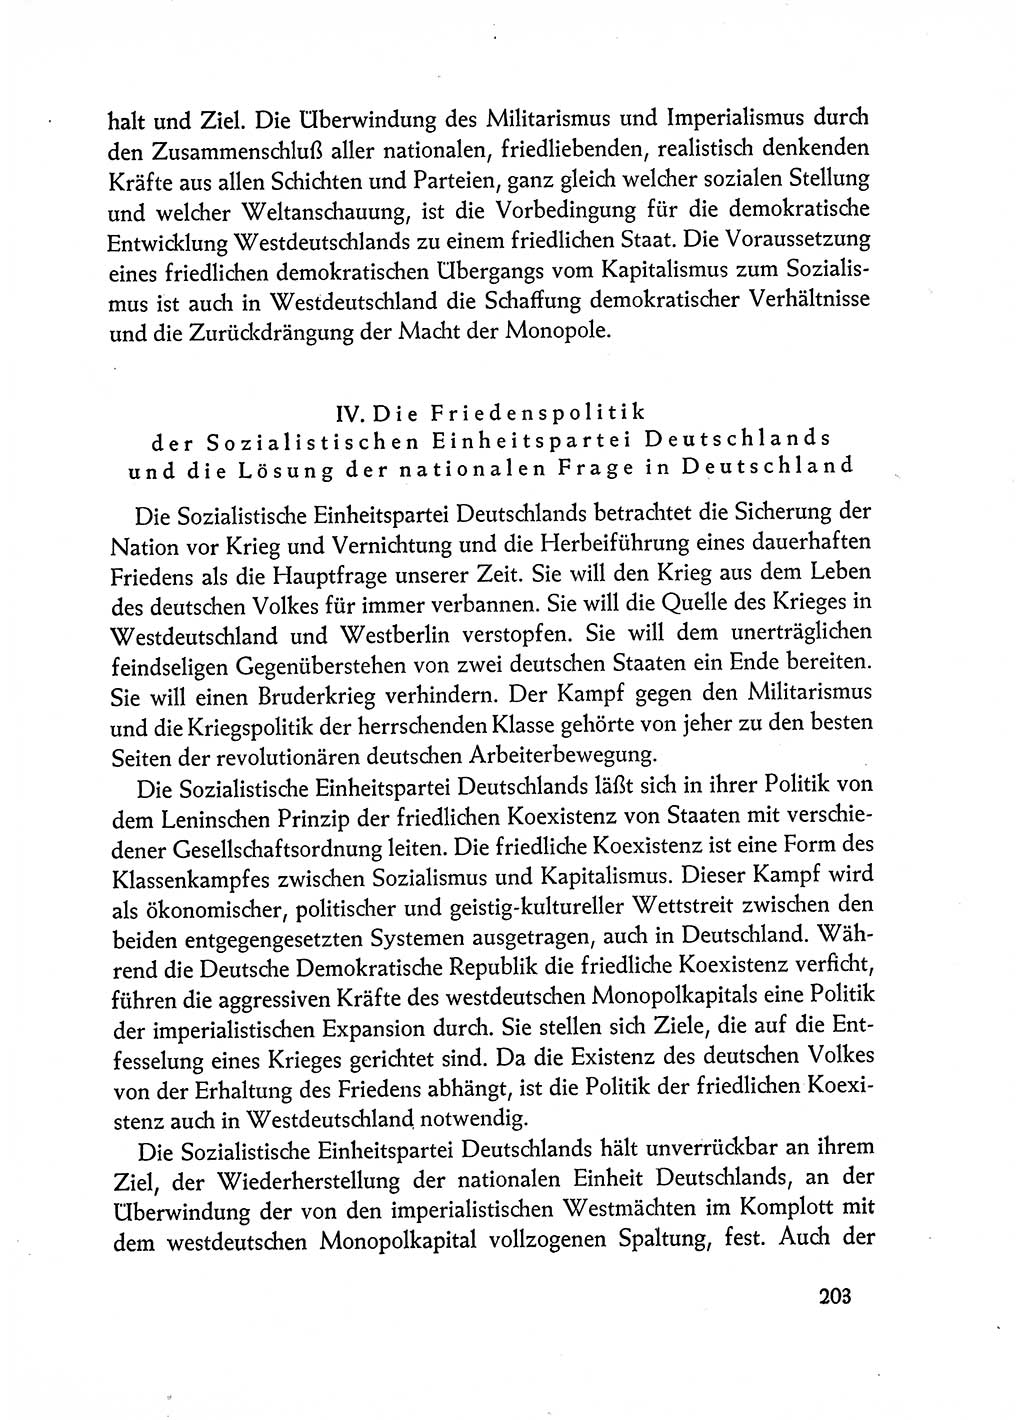 Dokumente der Sozialistischen Einheitspartei Deutschlands (SED) [Deutsche Demokratische Republik (DDR)] 1962-1963, Seite 203 (Dok. SED DDR 1962-1963, S. 203)